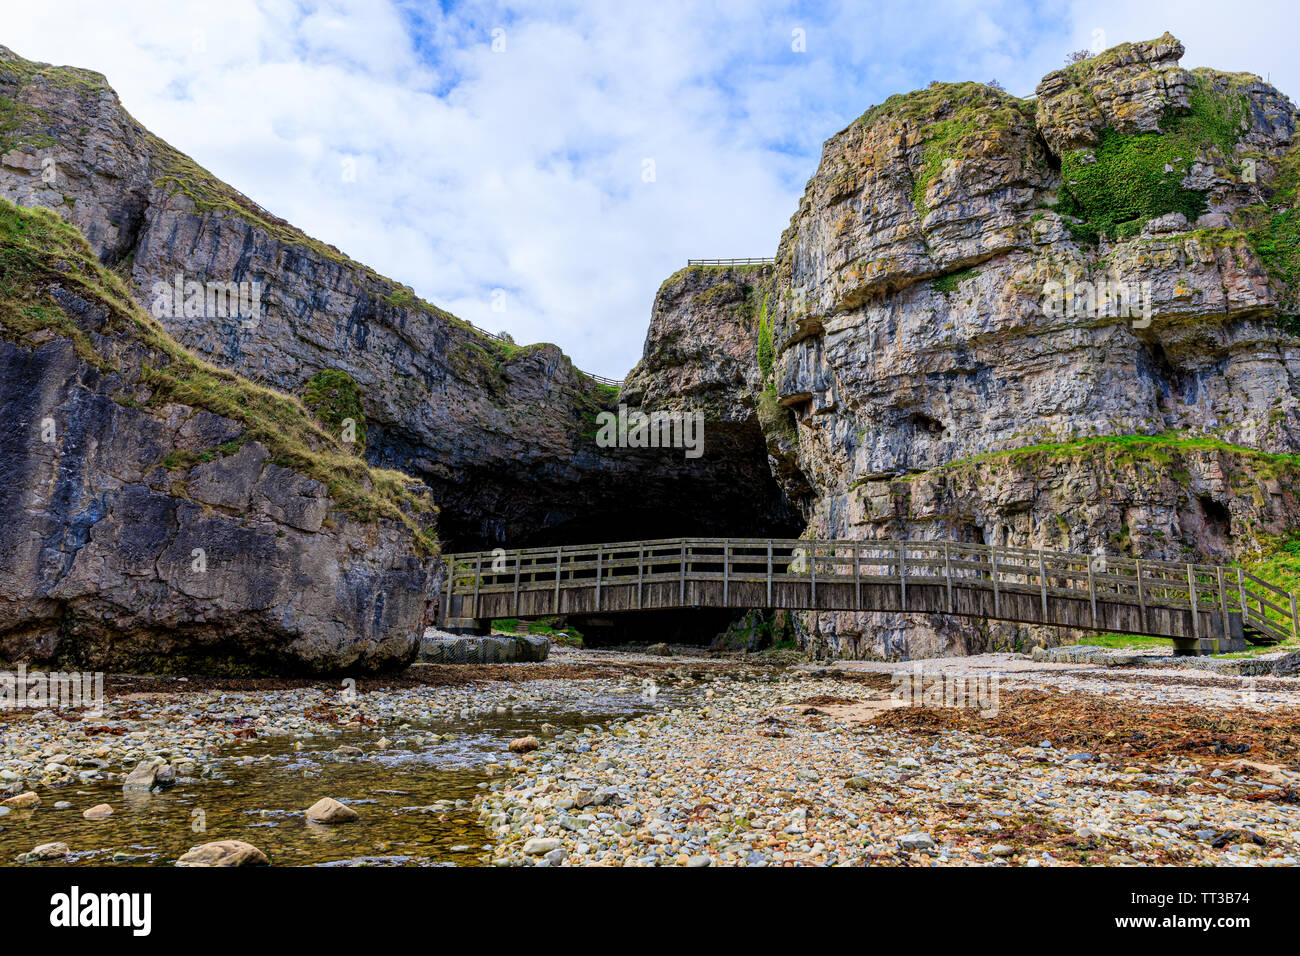 Der Eingang und die Brücke über den Stream von smoo Cave. Smoo Cave ist eine kombinierte Küsten- und Binnengewässern Höhle in Durness, Sutherland, Schottland, UK Stockfoto